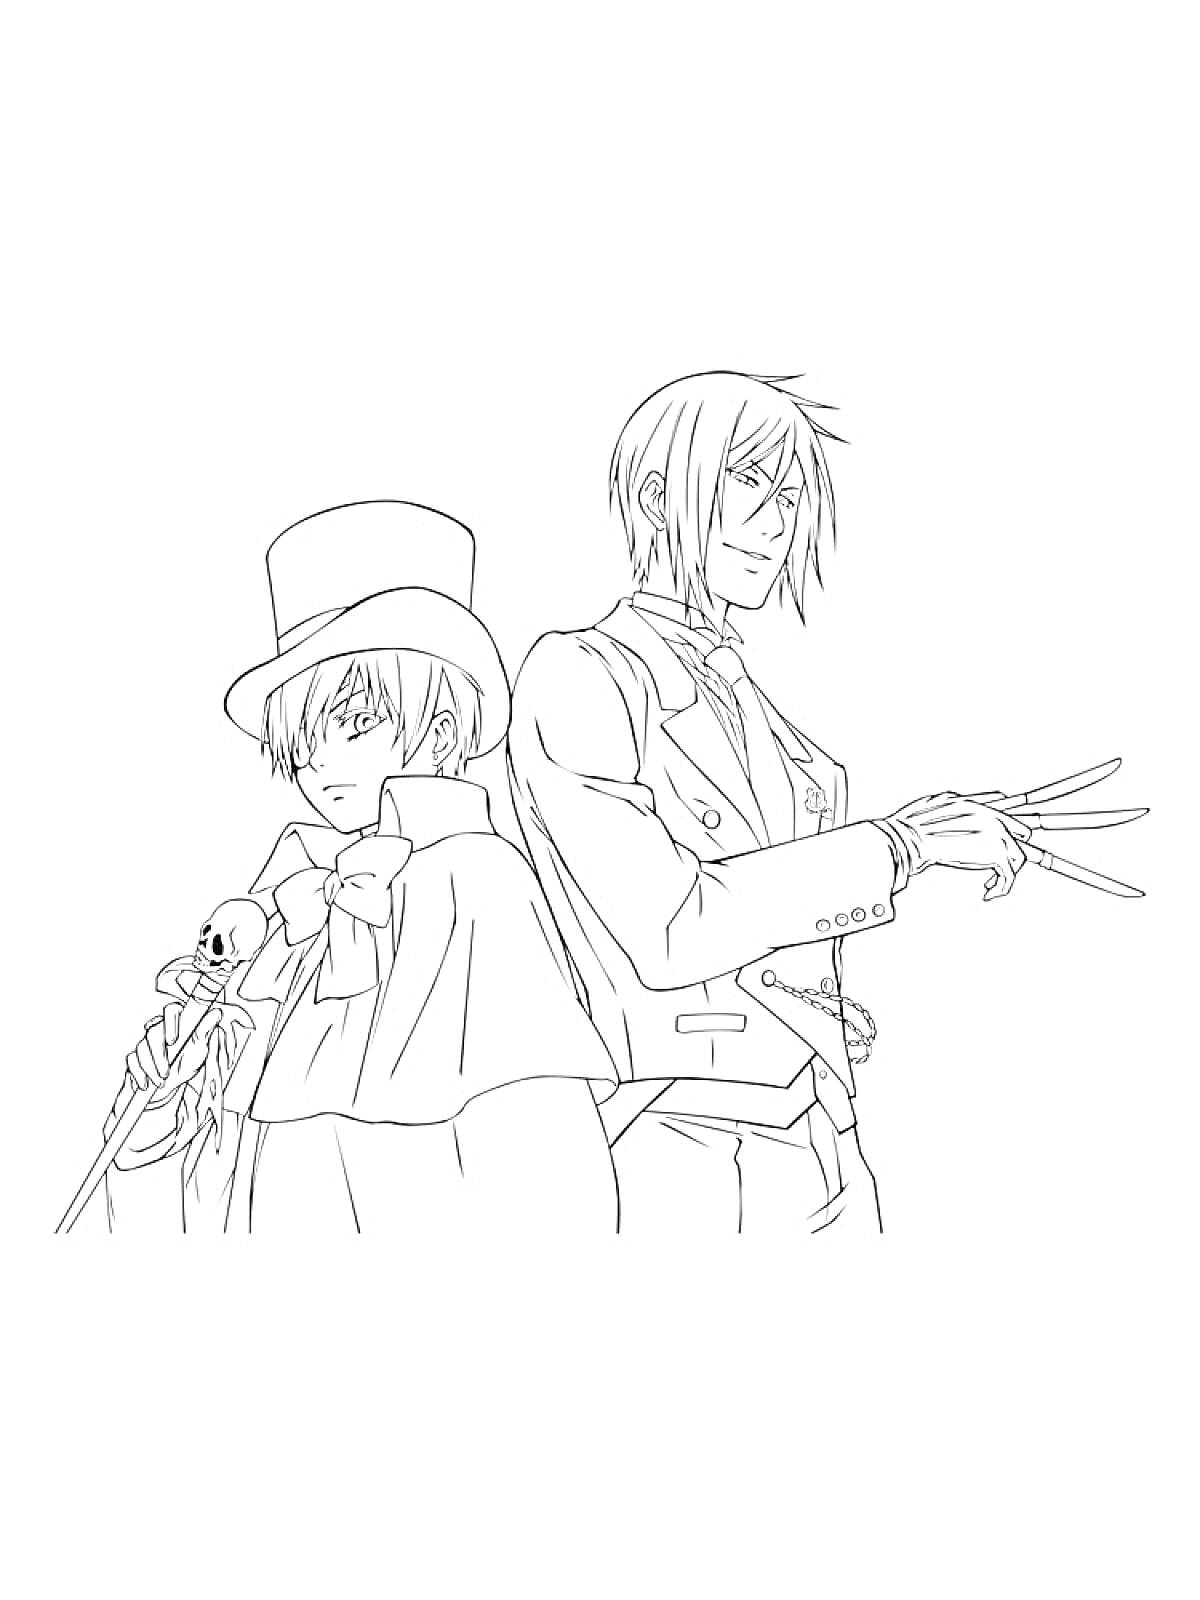 Раскраска Два персонажа из Тёмного дворецкого, один в цилиндре с тростью, другой с длинными когтями на руках